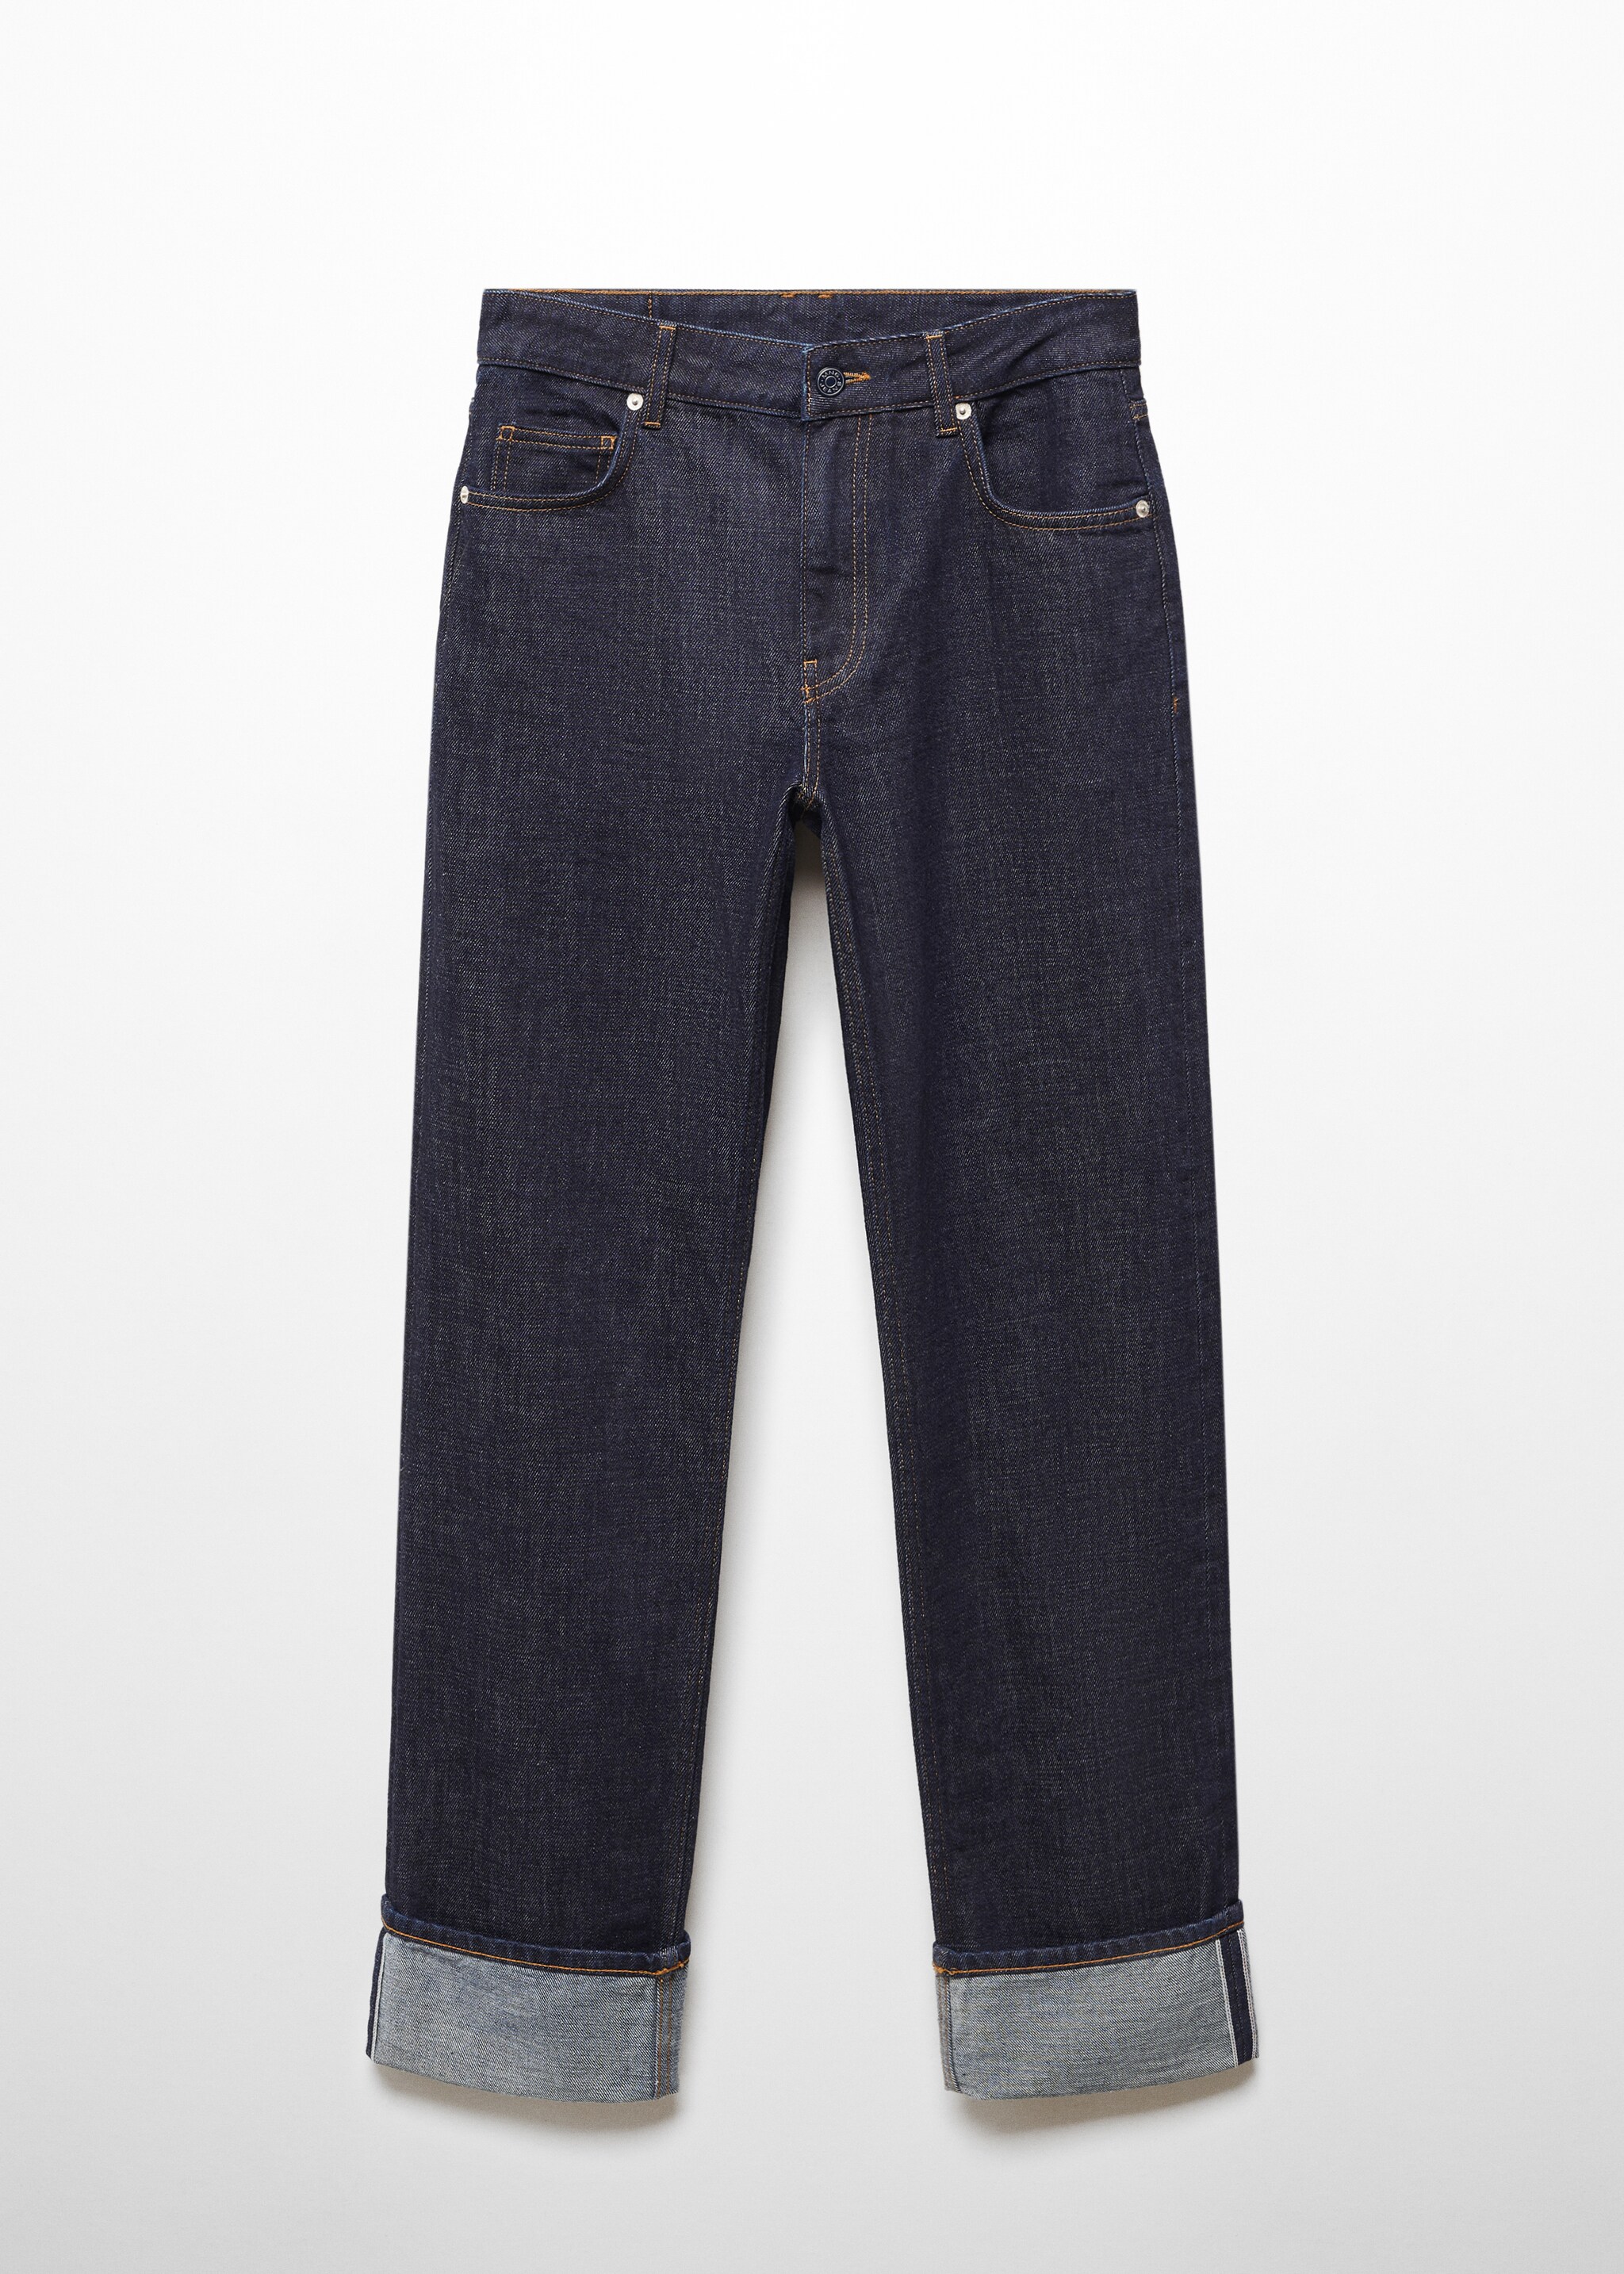 Jeans rectos selvedge - Artículo sin modelo